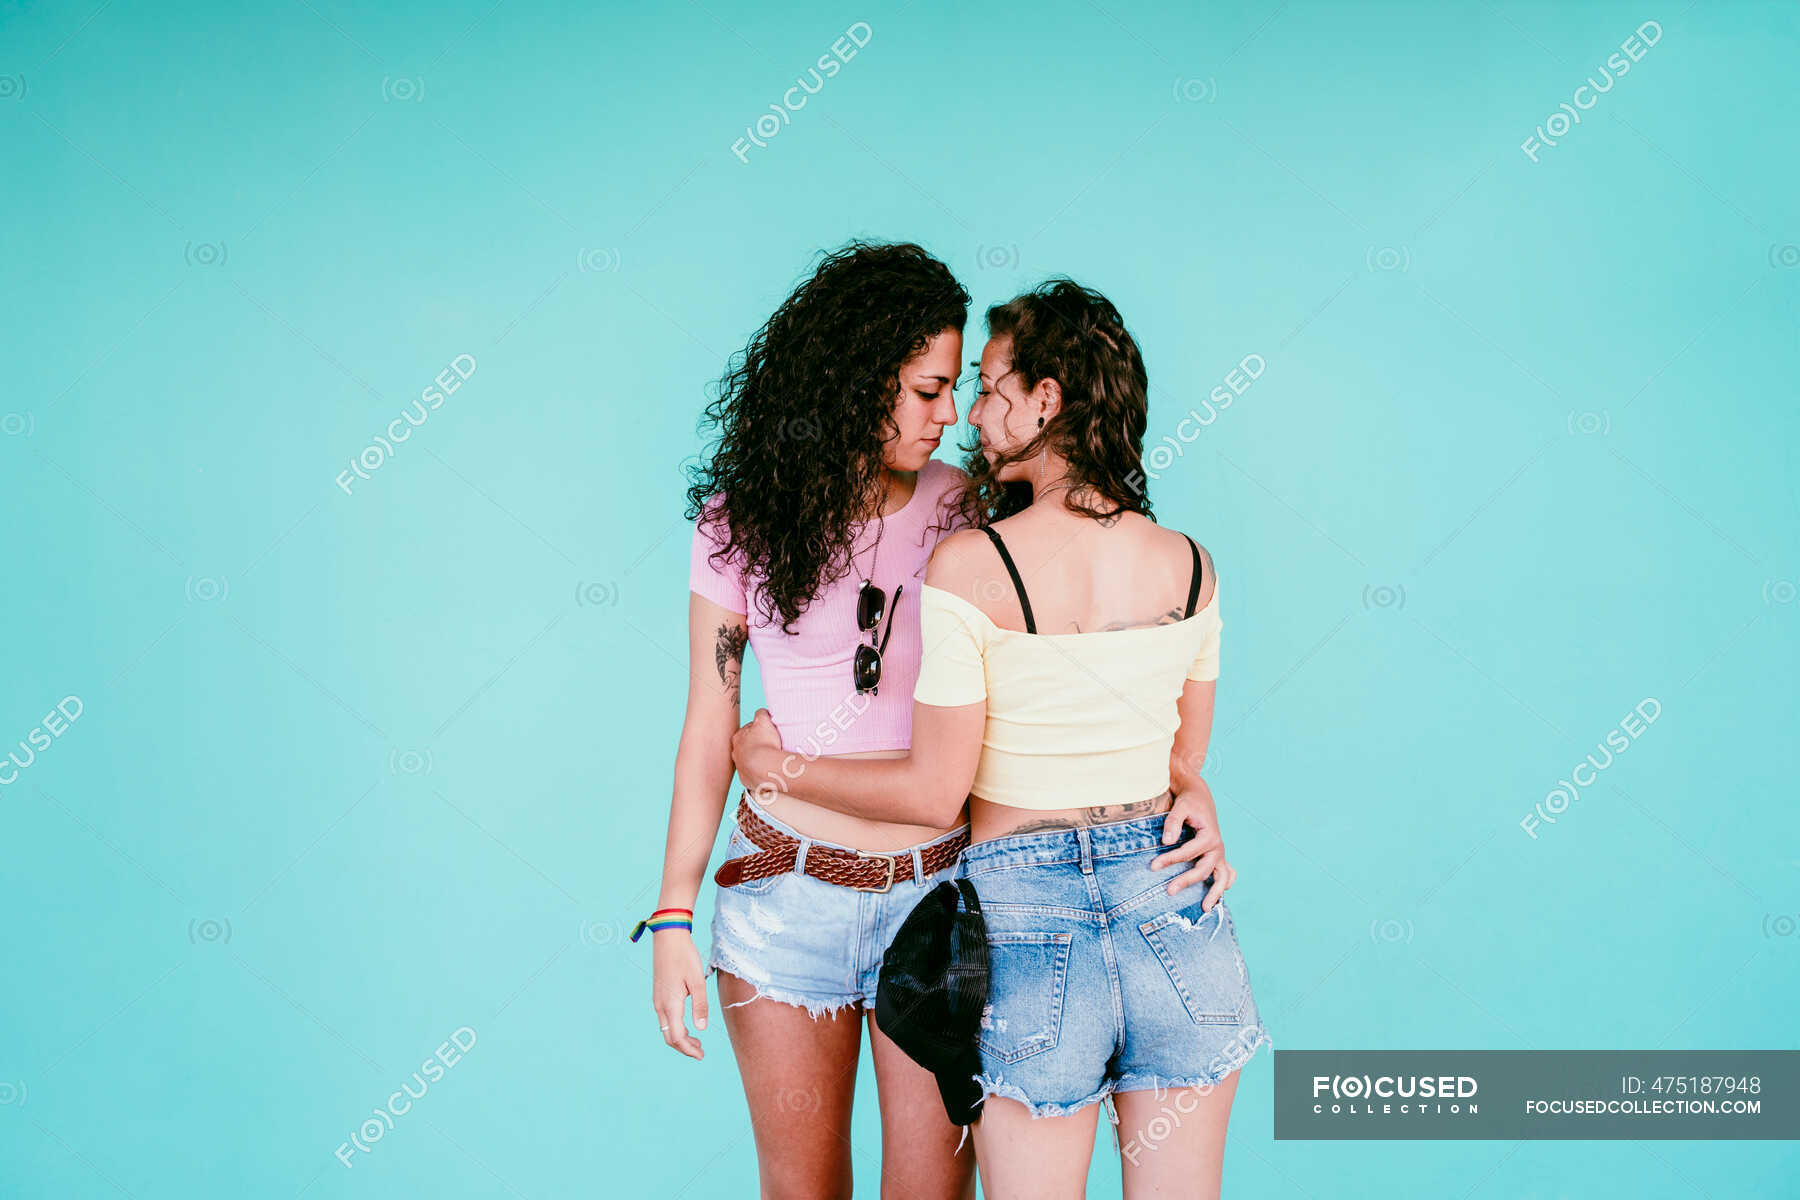 Lesbian shorts. Фото скина и панка стоящих в обнимку.